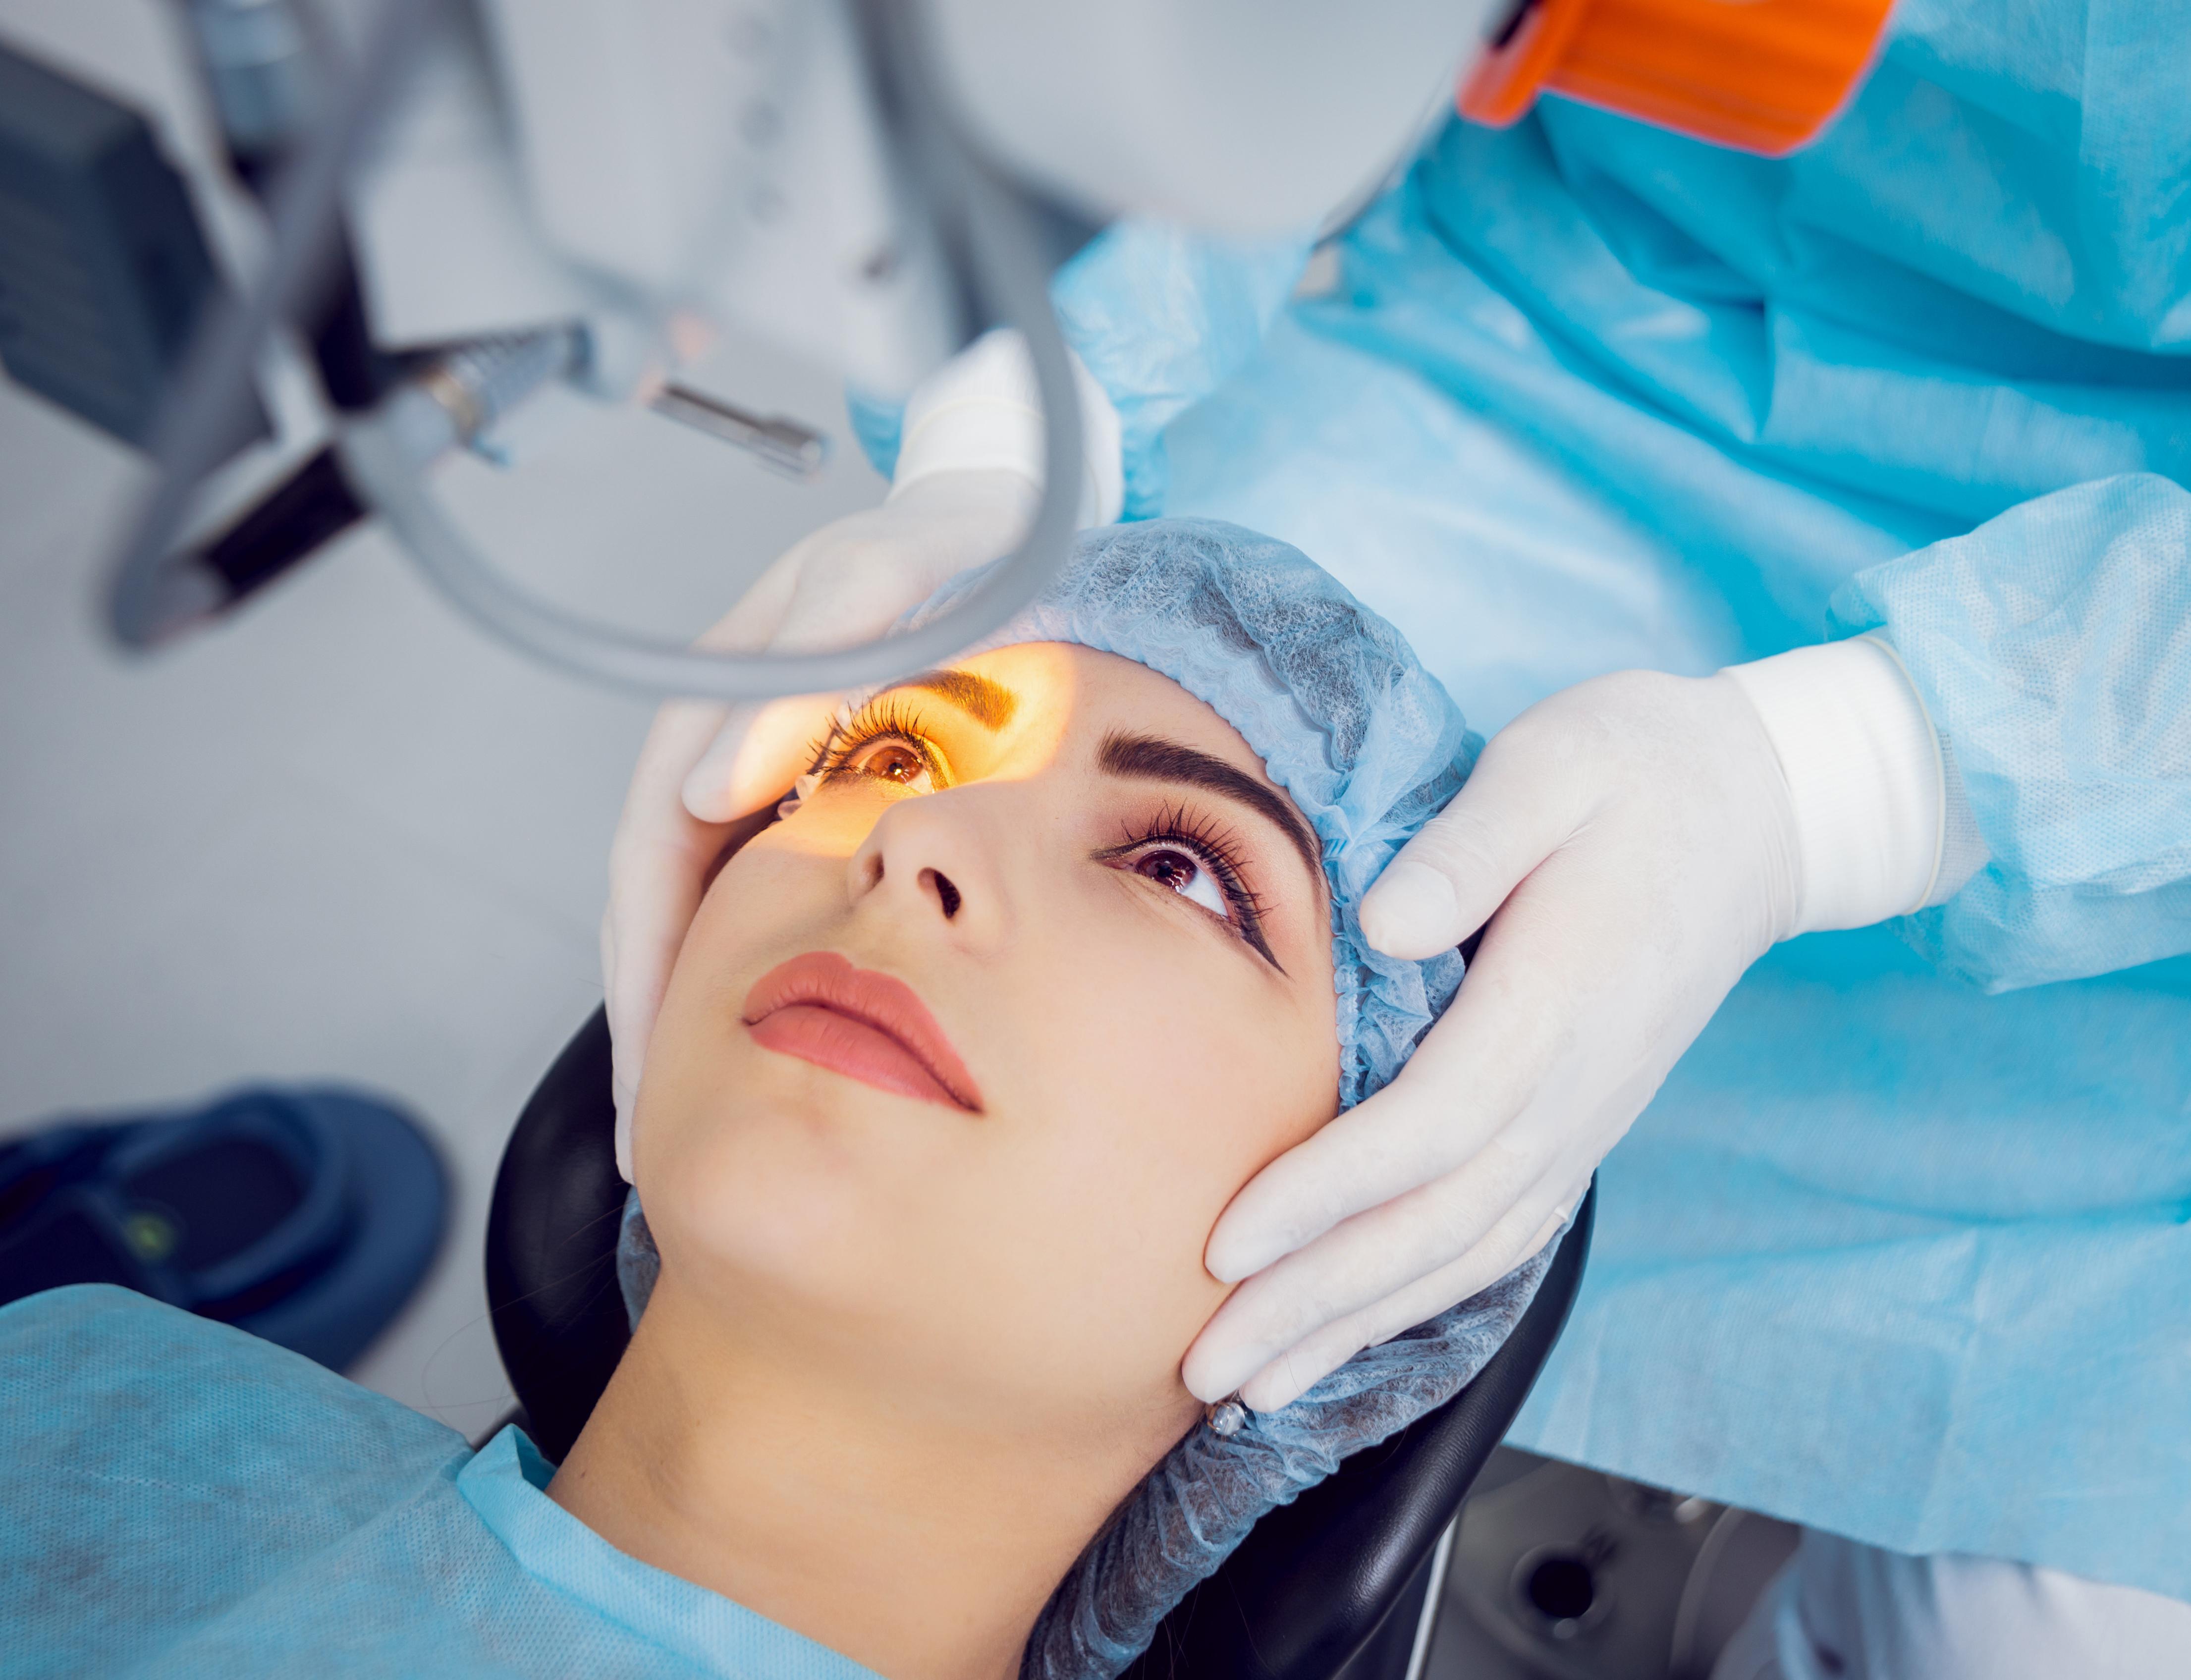 Лазерная коррекция зрения спустя много лет отзывы. Лазерная операция на глаза. Хирургическая коррекция зрения.